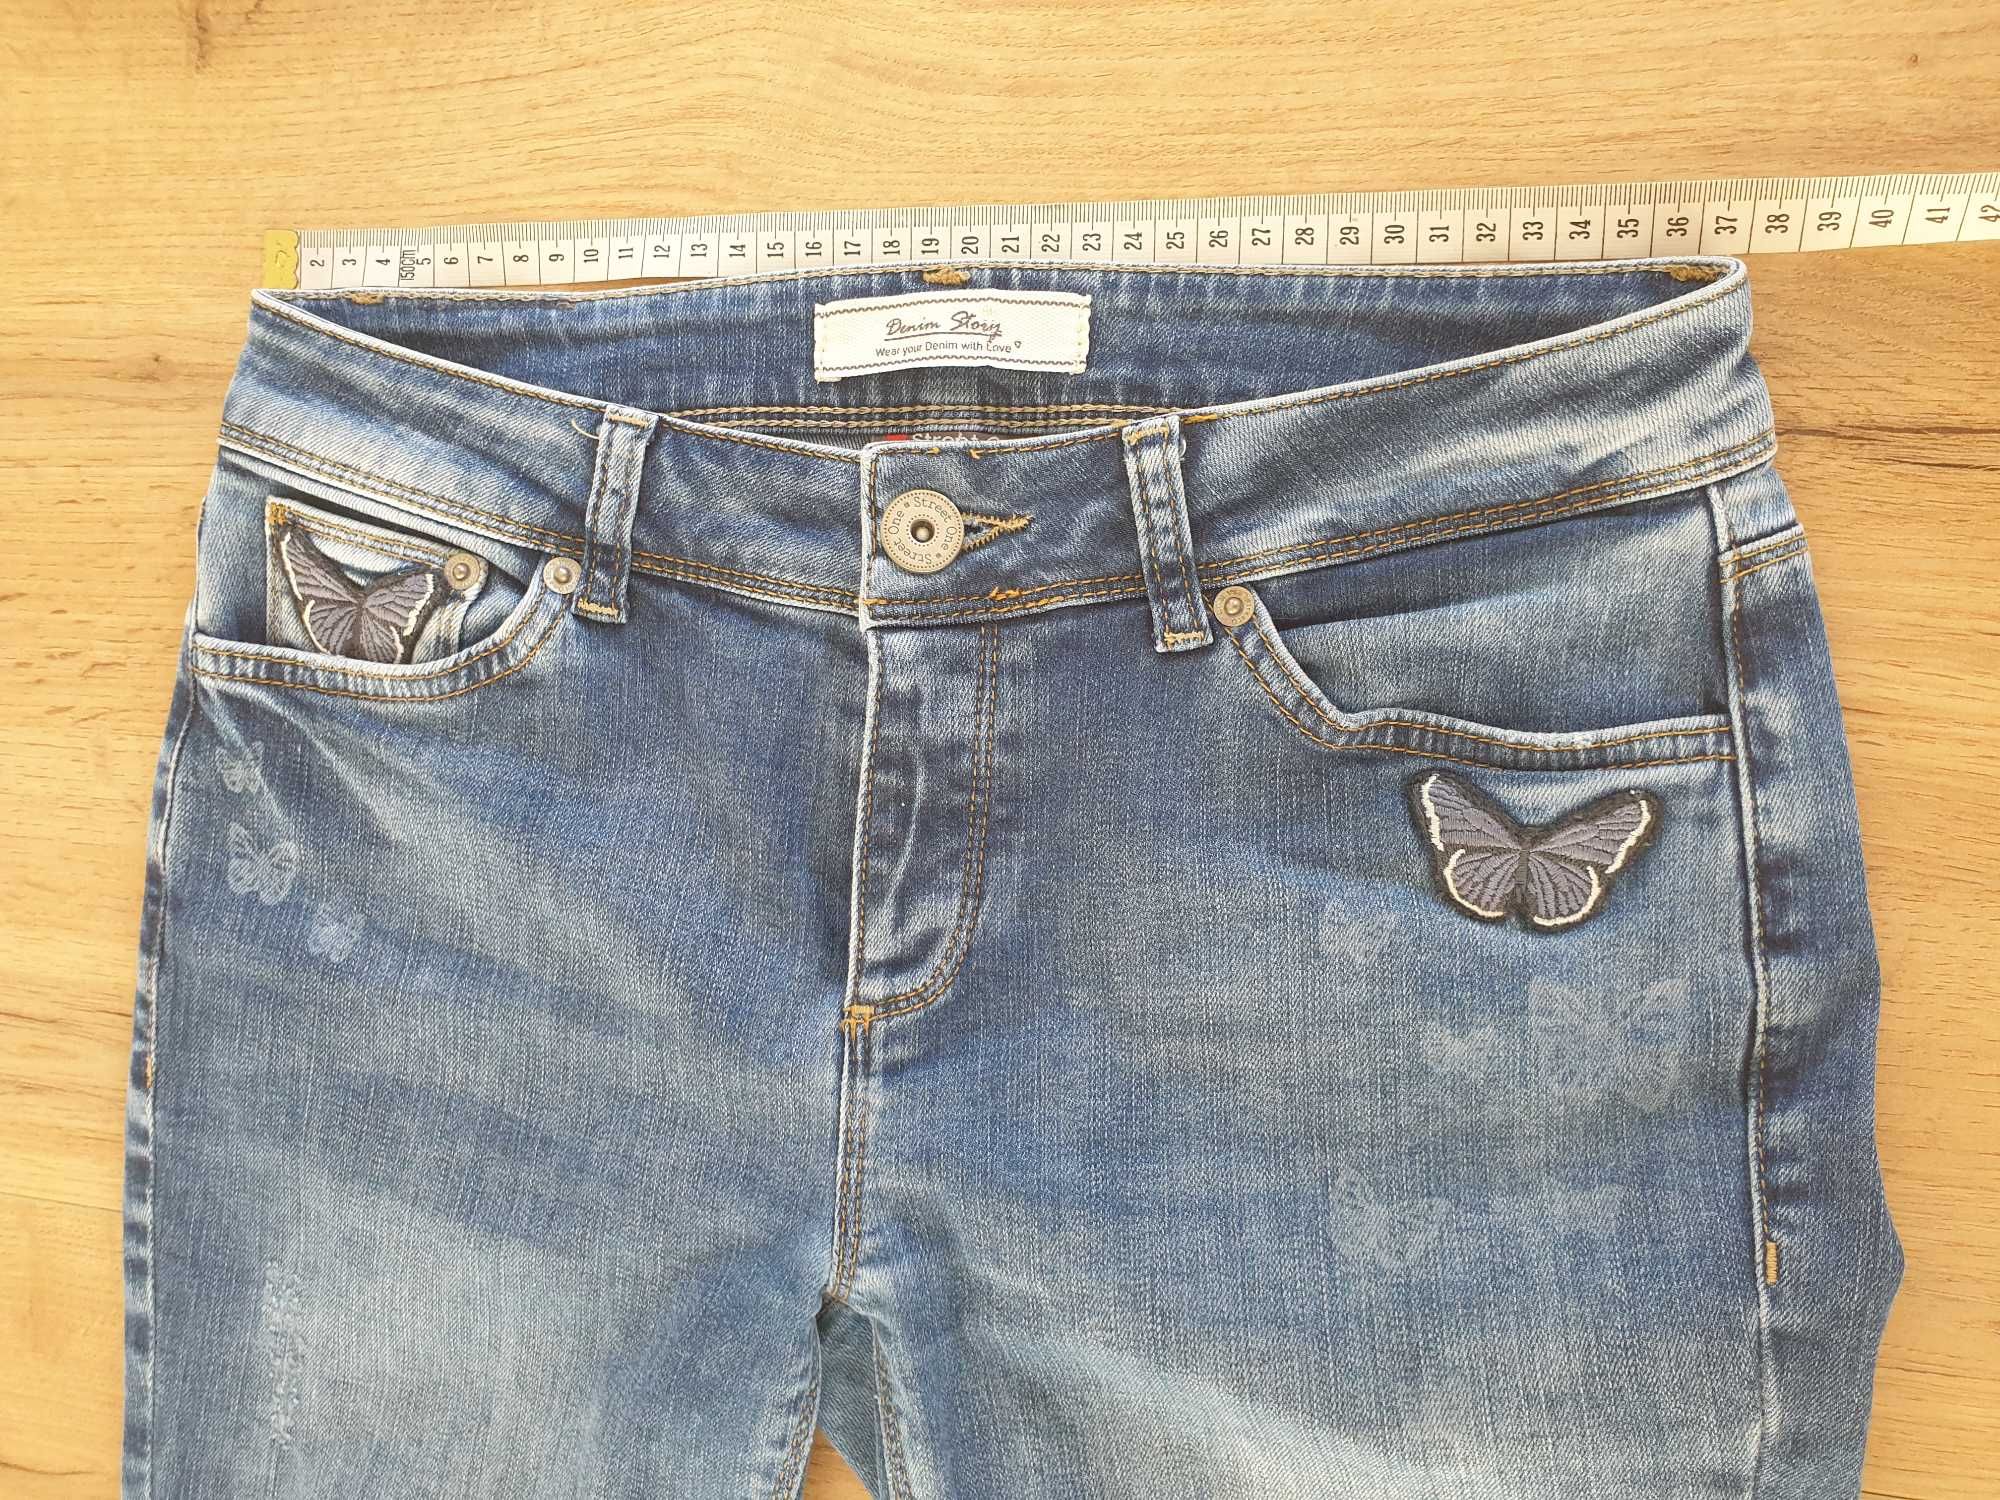 Spodnie jeansowe zdobione motylkami, Street One, W26/L32